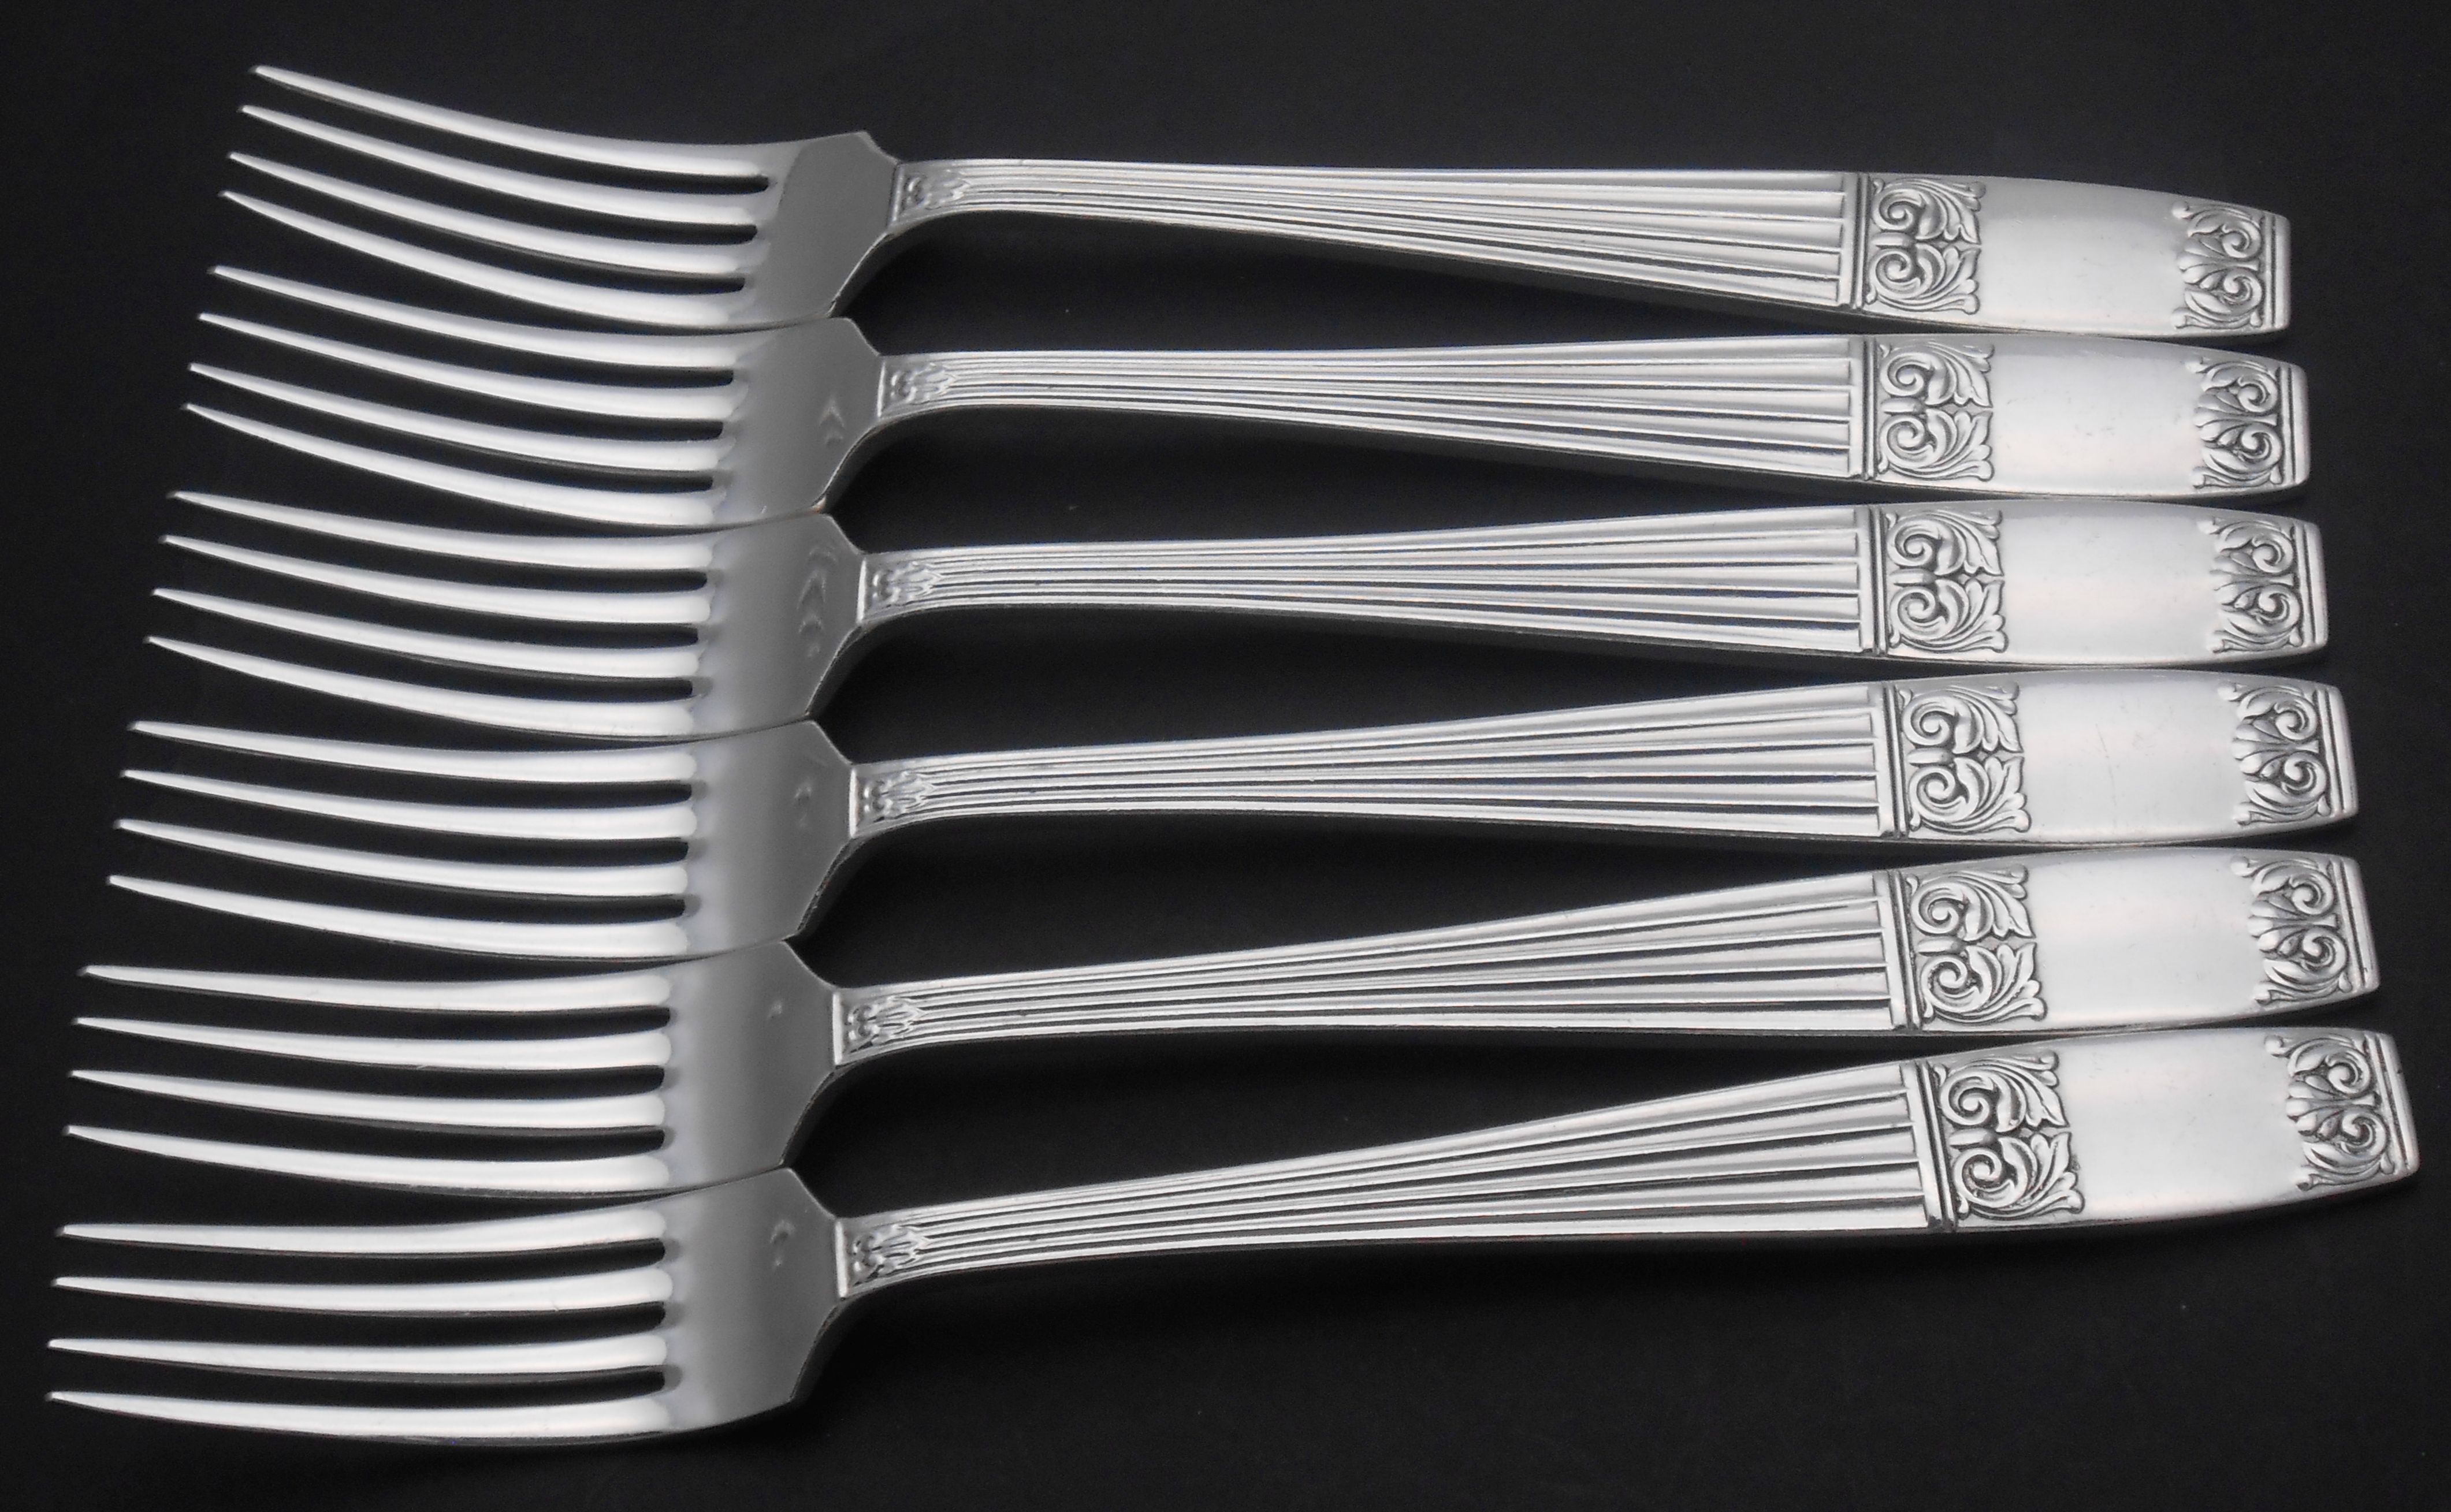 Elkington Westminster pattern cutlery / flatware